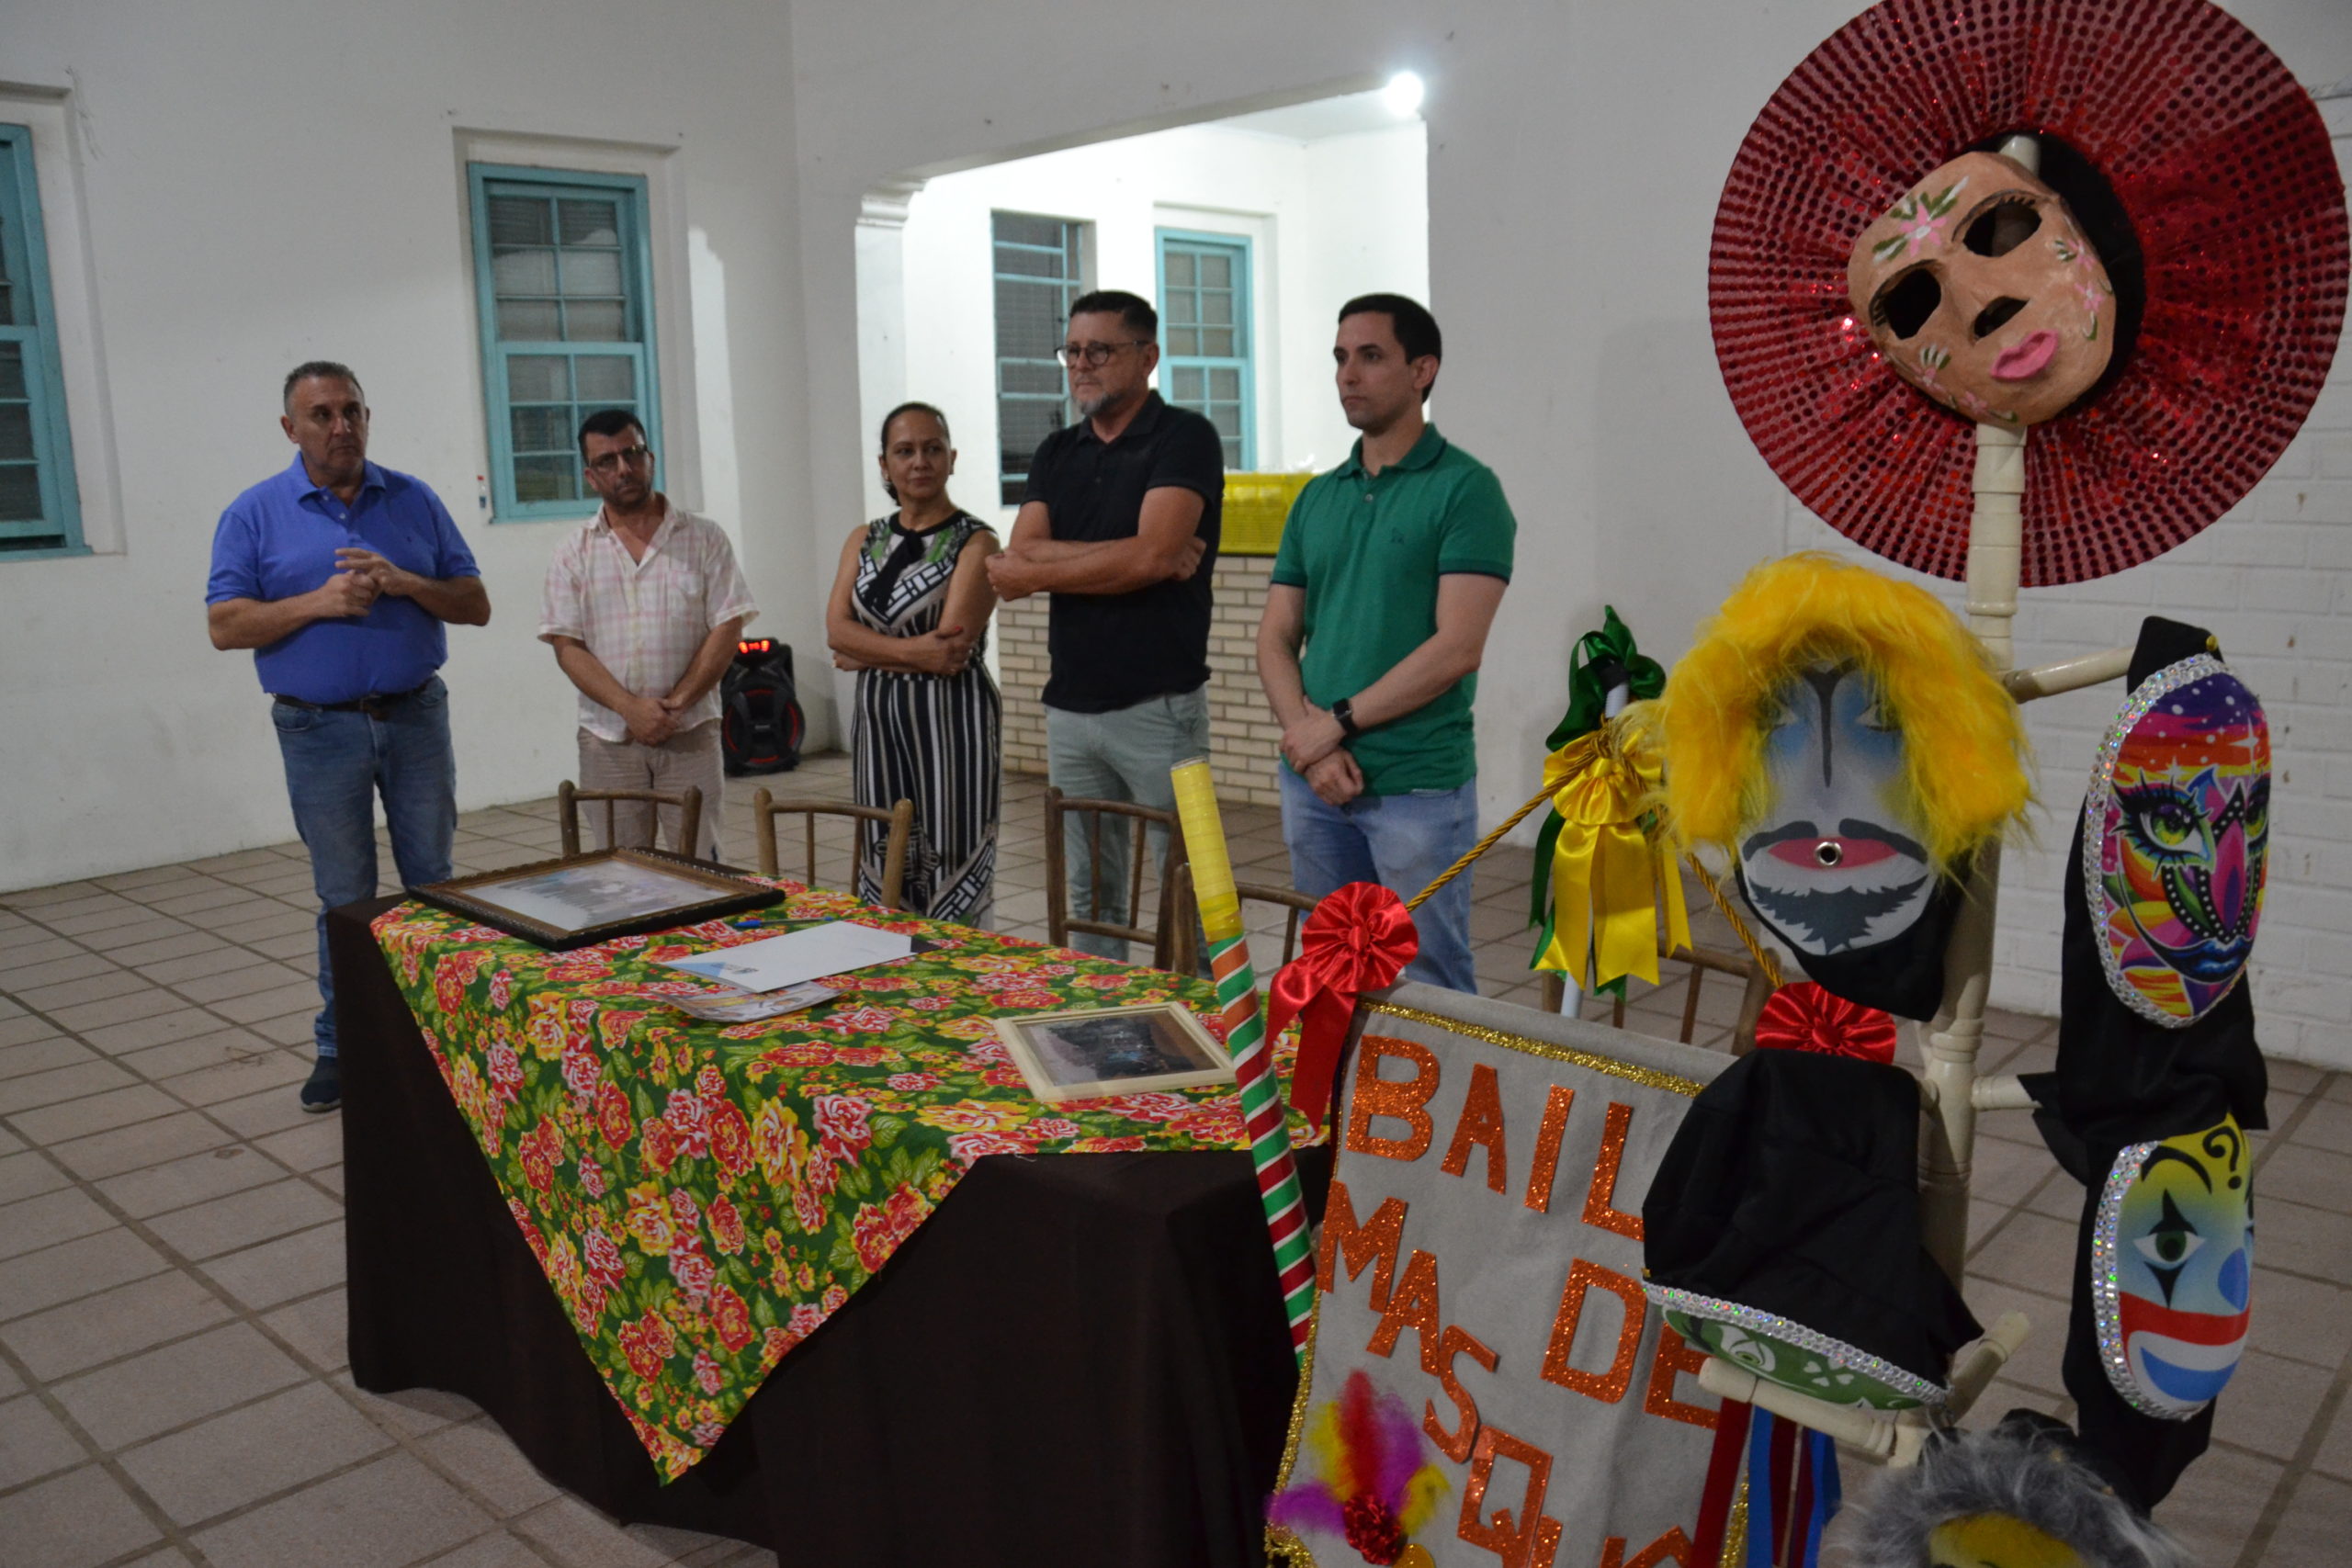 Sancionada Lei que reconhece o Baile de Masquê como Patrimônio Cultural em Santo Antônio